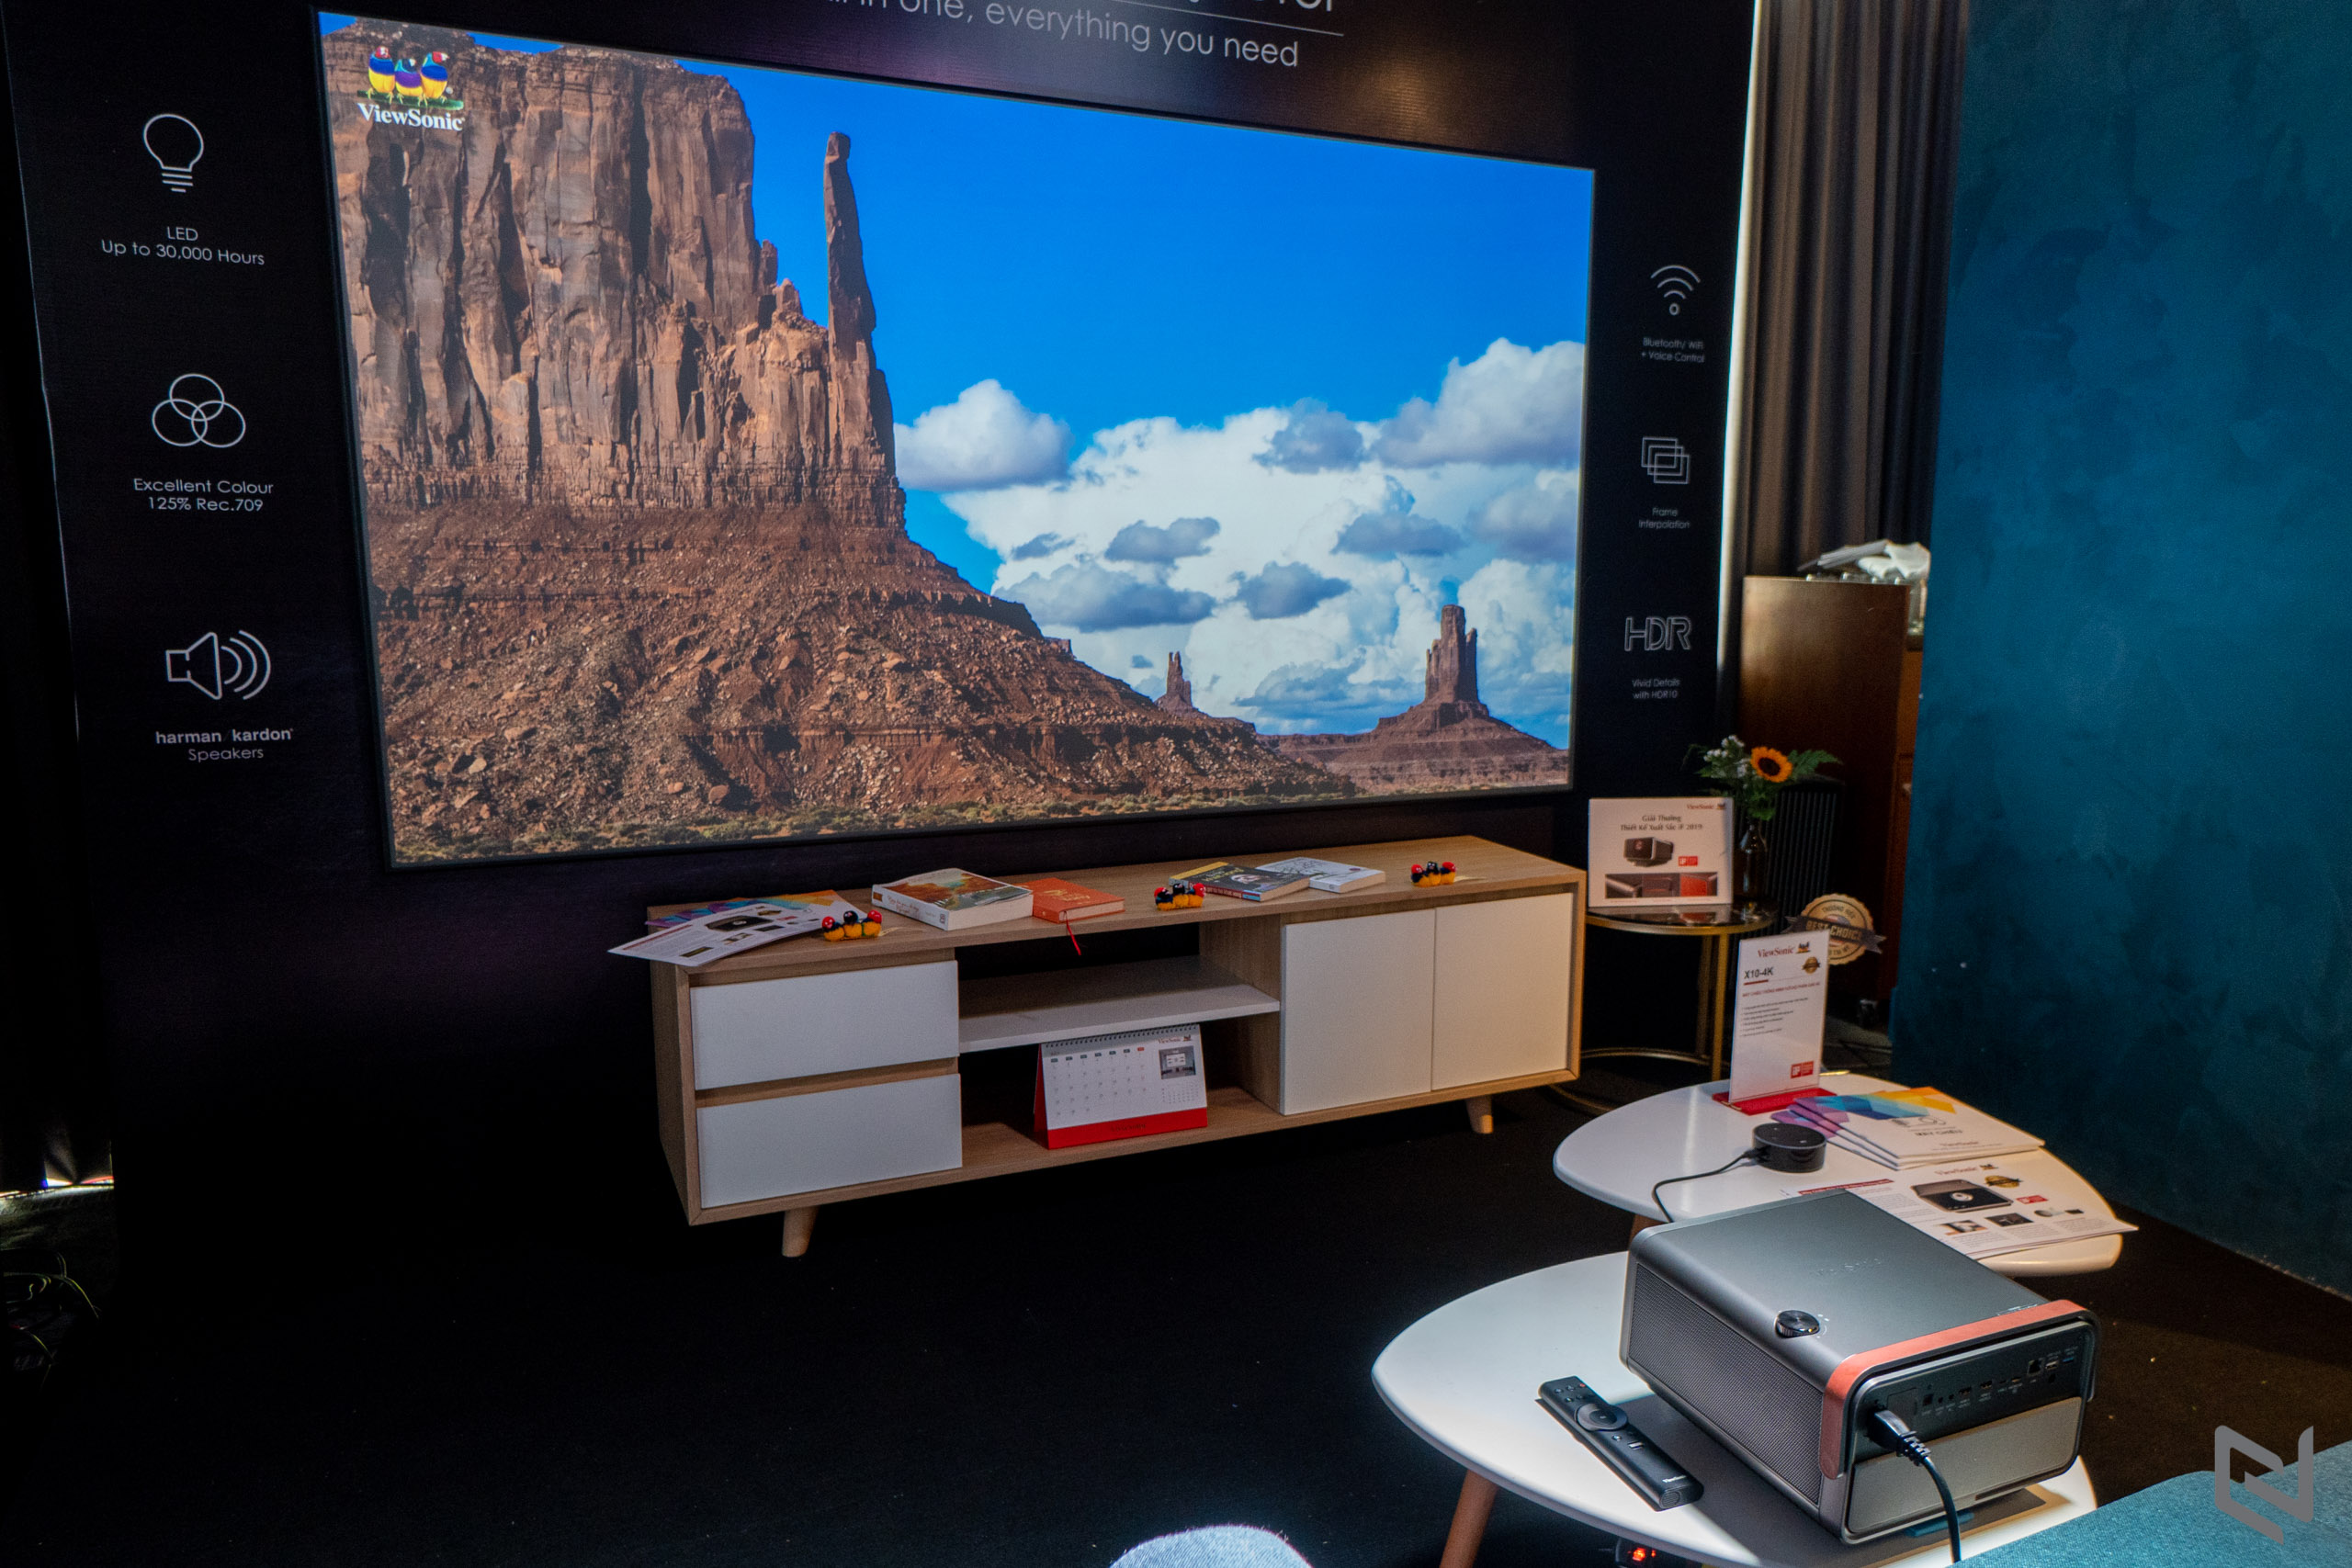 ViewSonic ra mắt máy chiếu thông minh X10-4K: công nghệ LED 4K HDR, loa Harman Kardon cao cấp, giá 49 triệu đồng